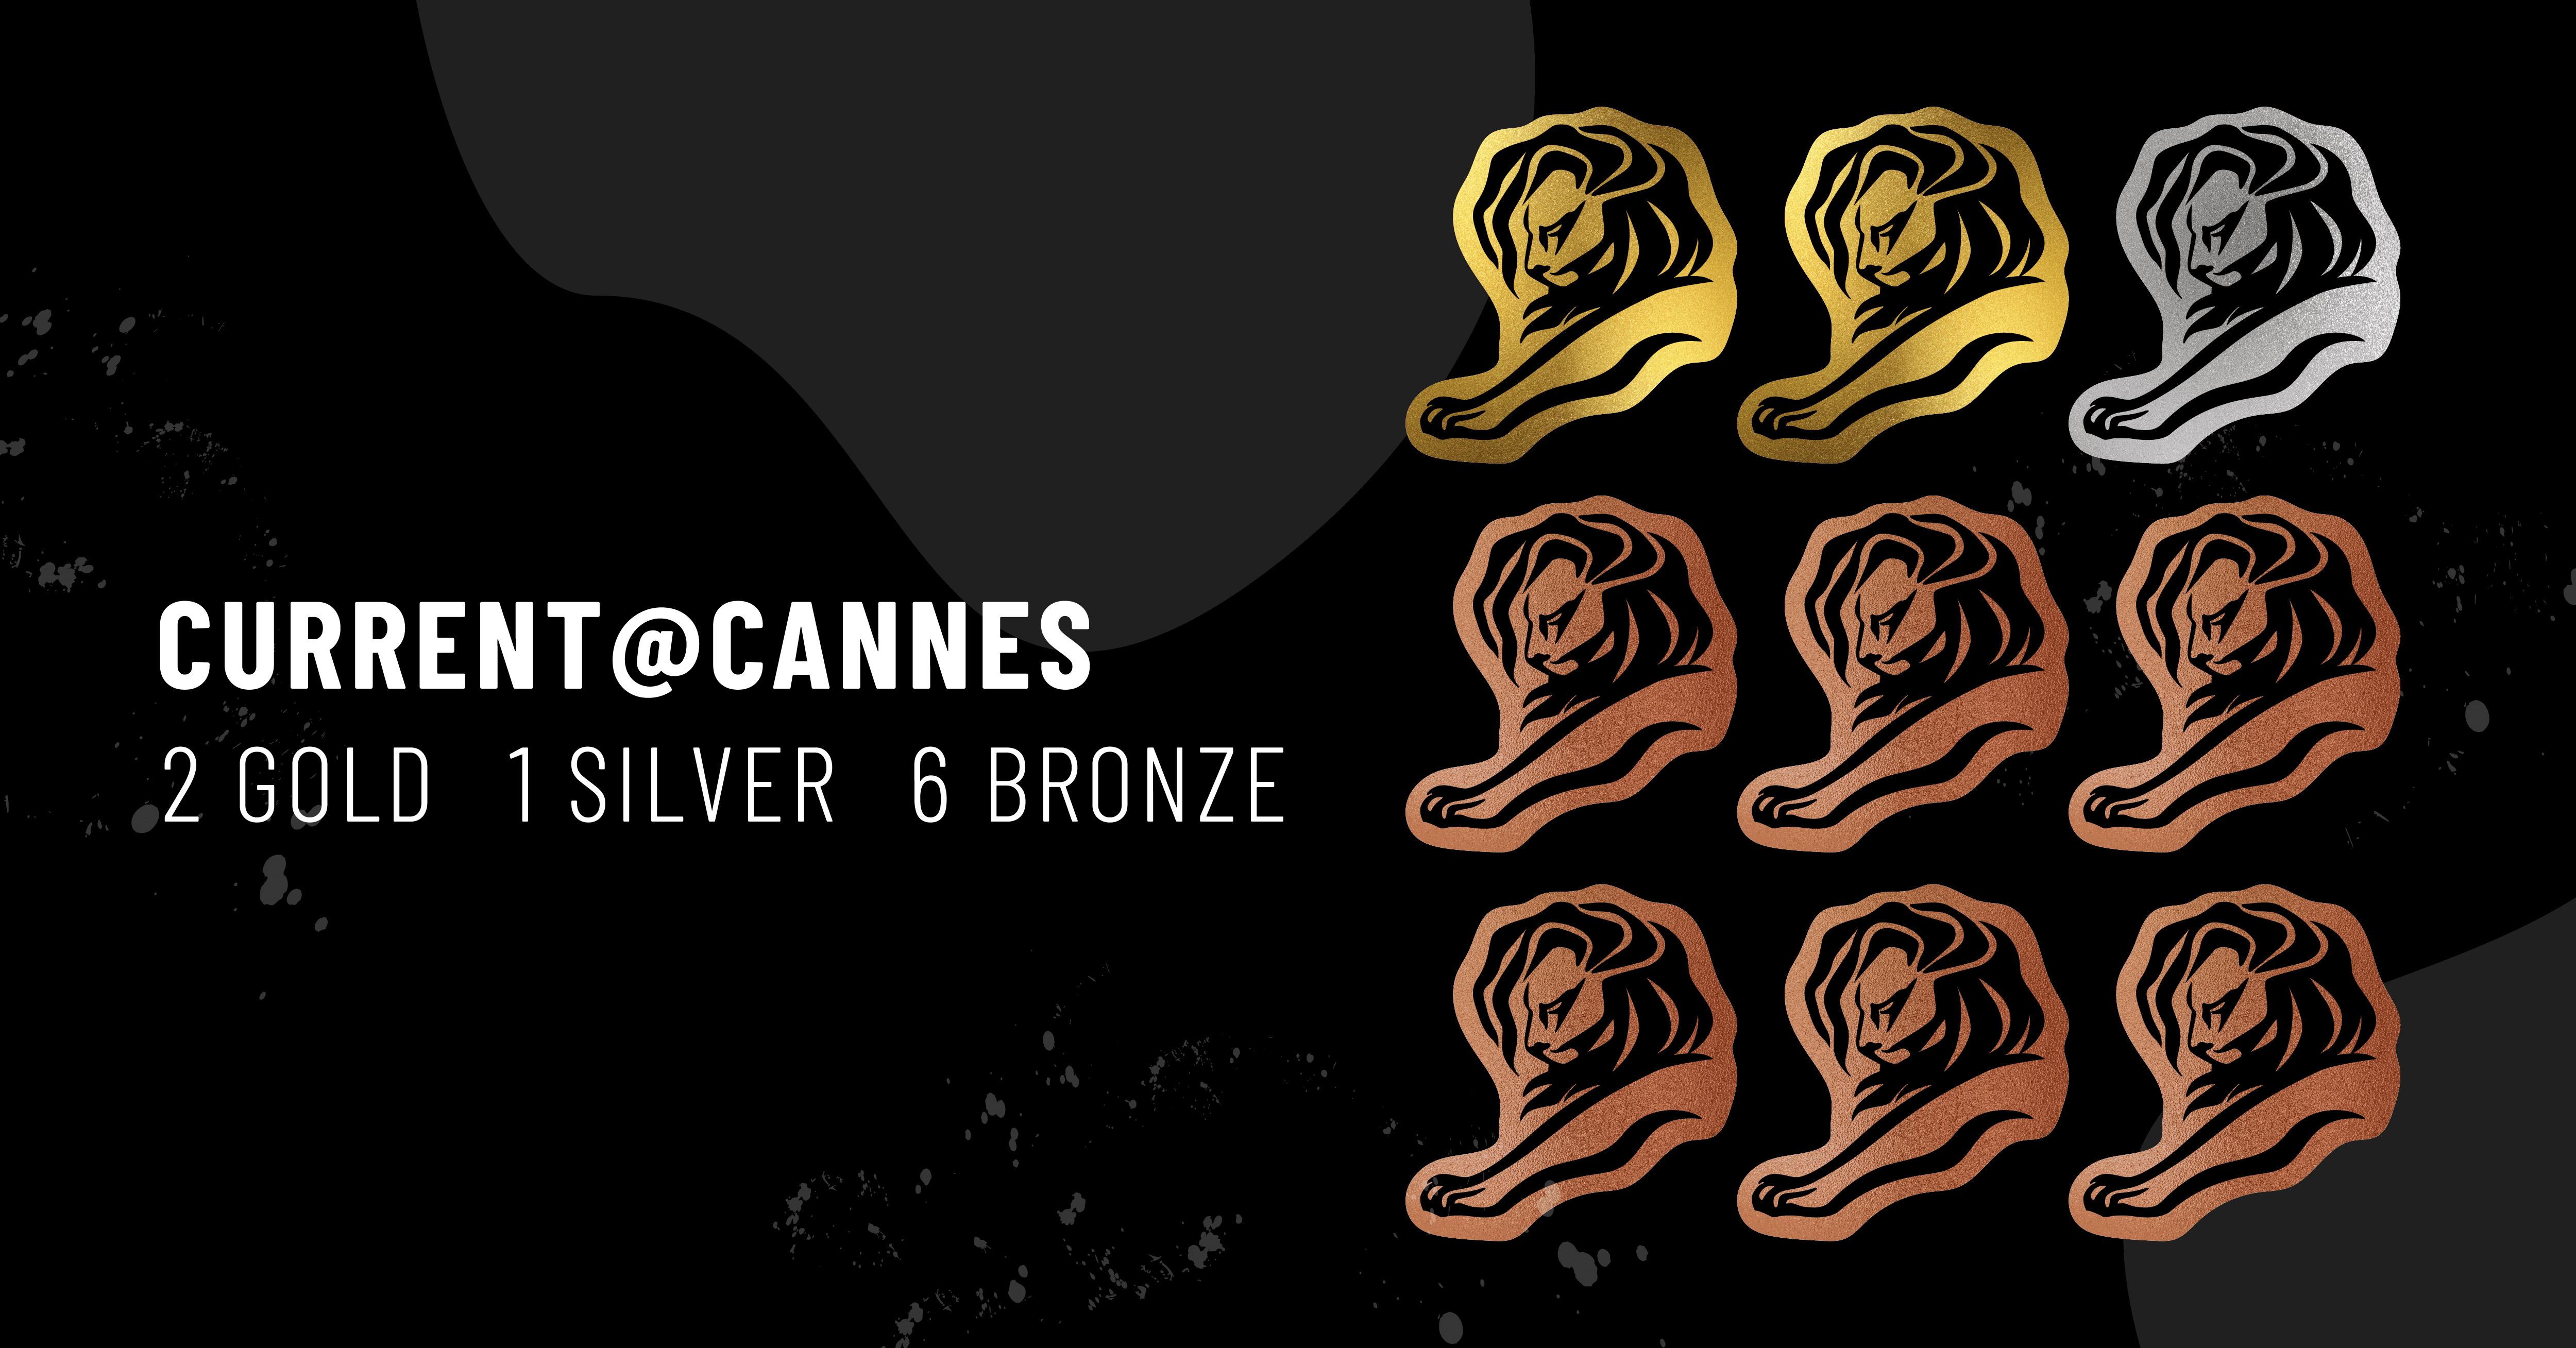 La imagen muestra el icono de 9 Cannes Lions con un texto que reza: Current @ Cannes - 2 Gold, 1 Silver, 6 Bronze.